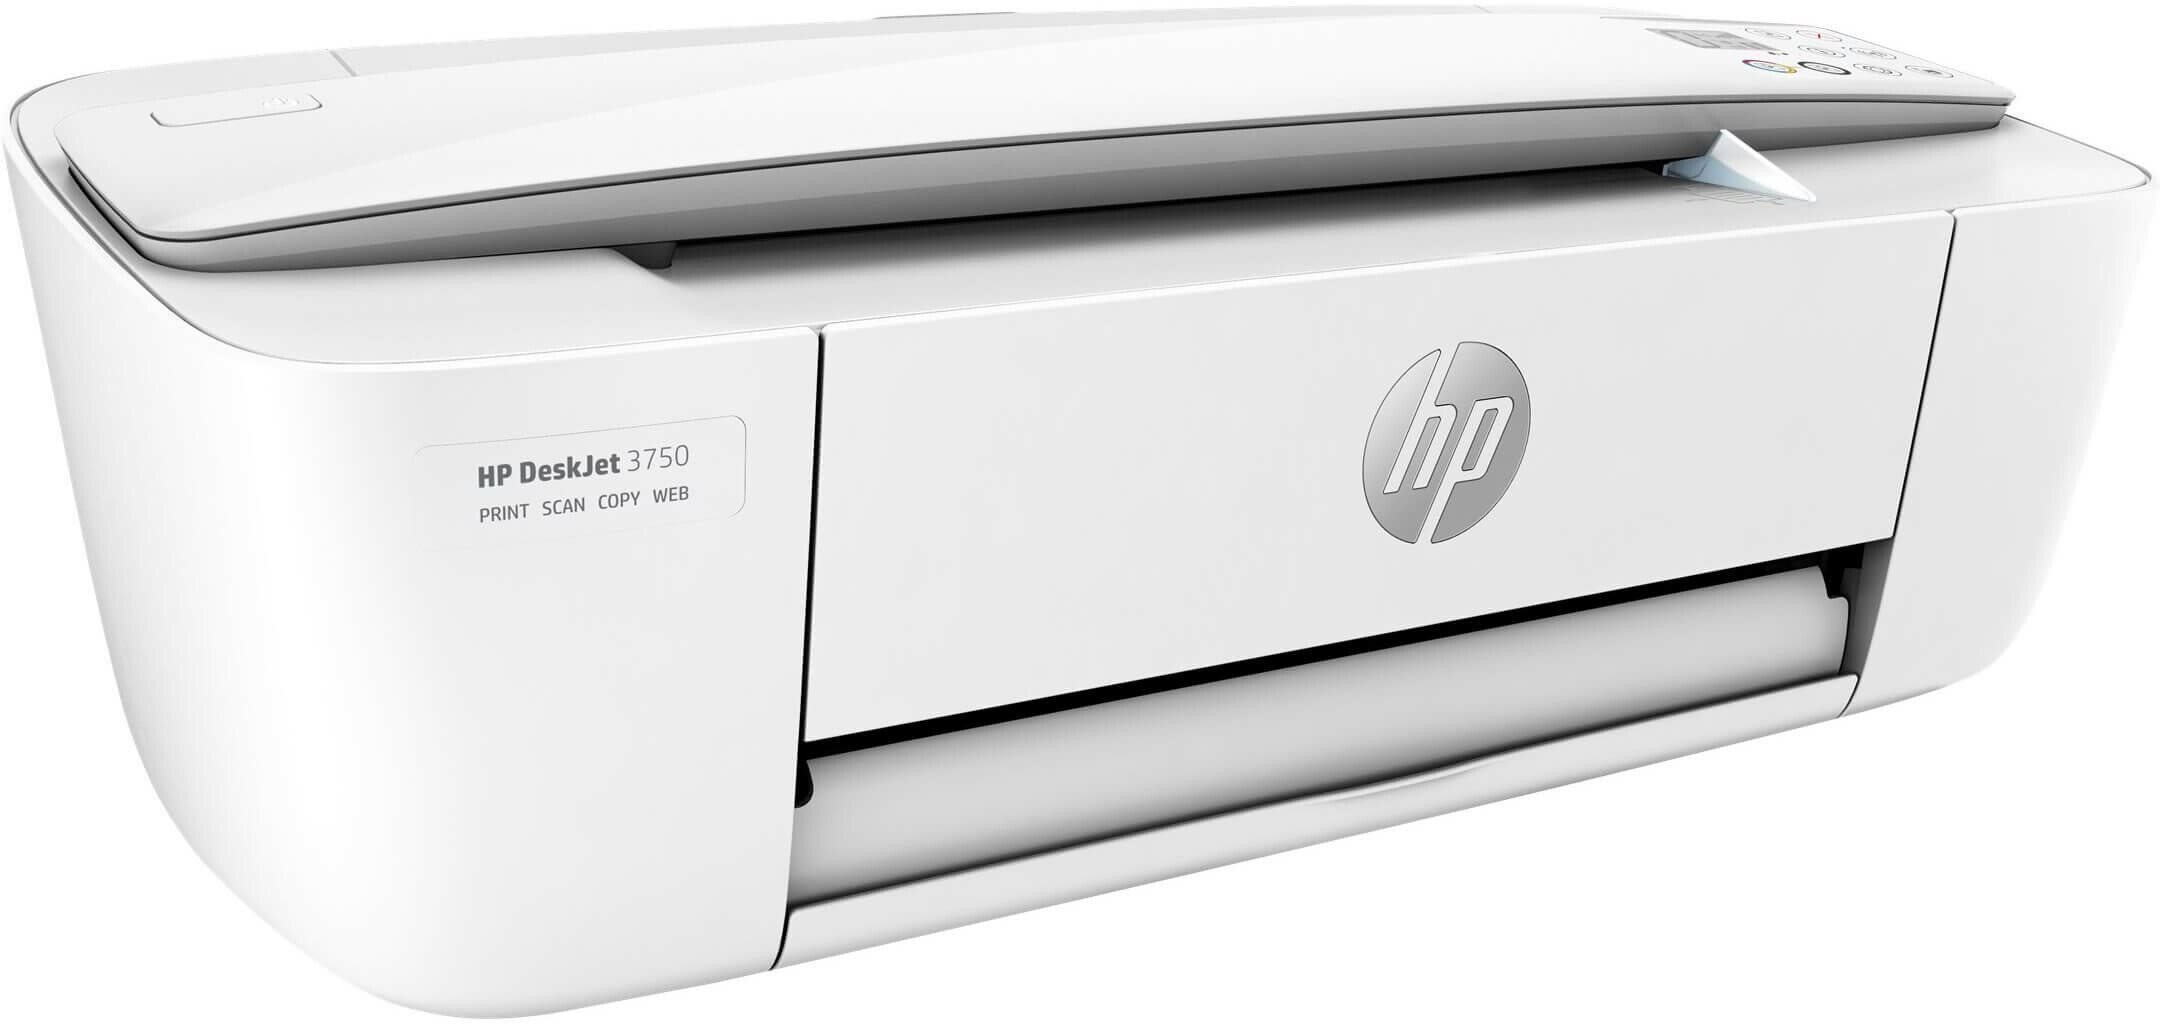 Tintenstrahldrucker HP DeskJet 3750 grau All-in-One Seitlicher Anblick